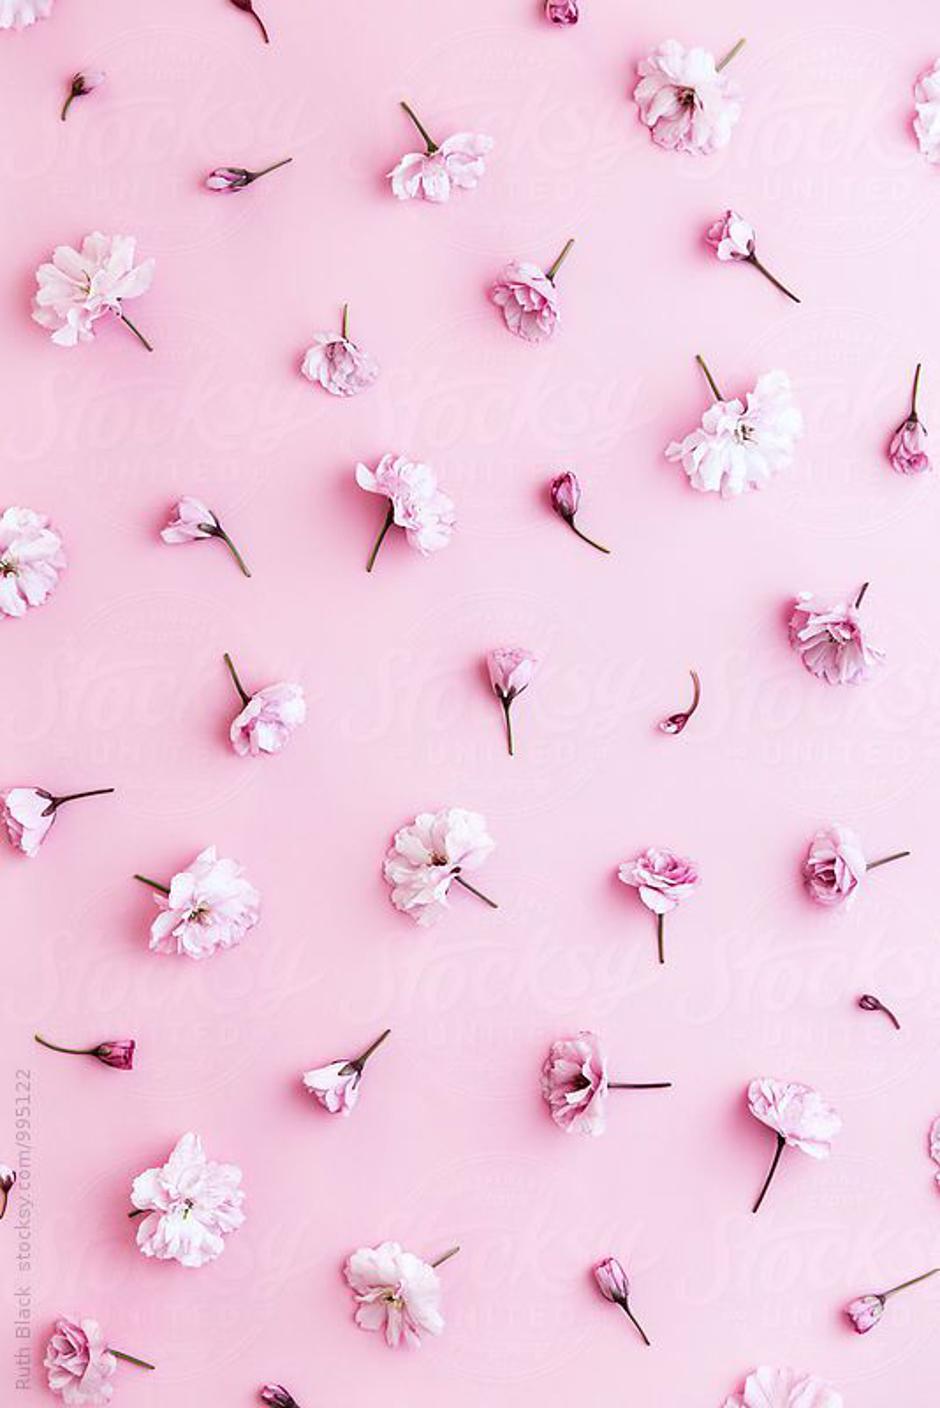 45 najljepših ružičastih fotografija na svijetu Joomboos.24sata.hr